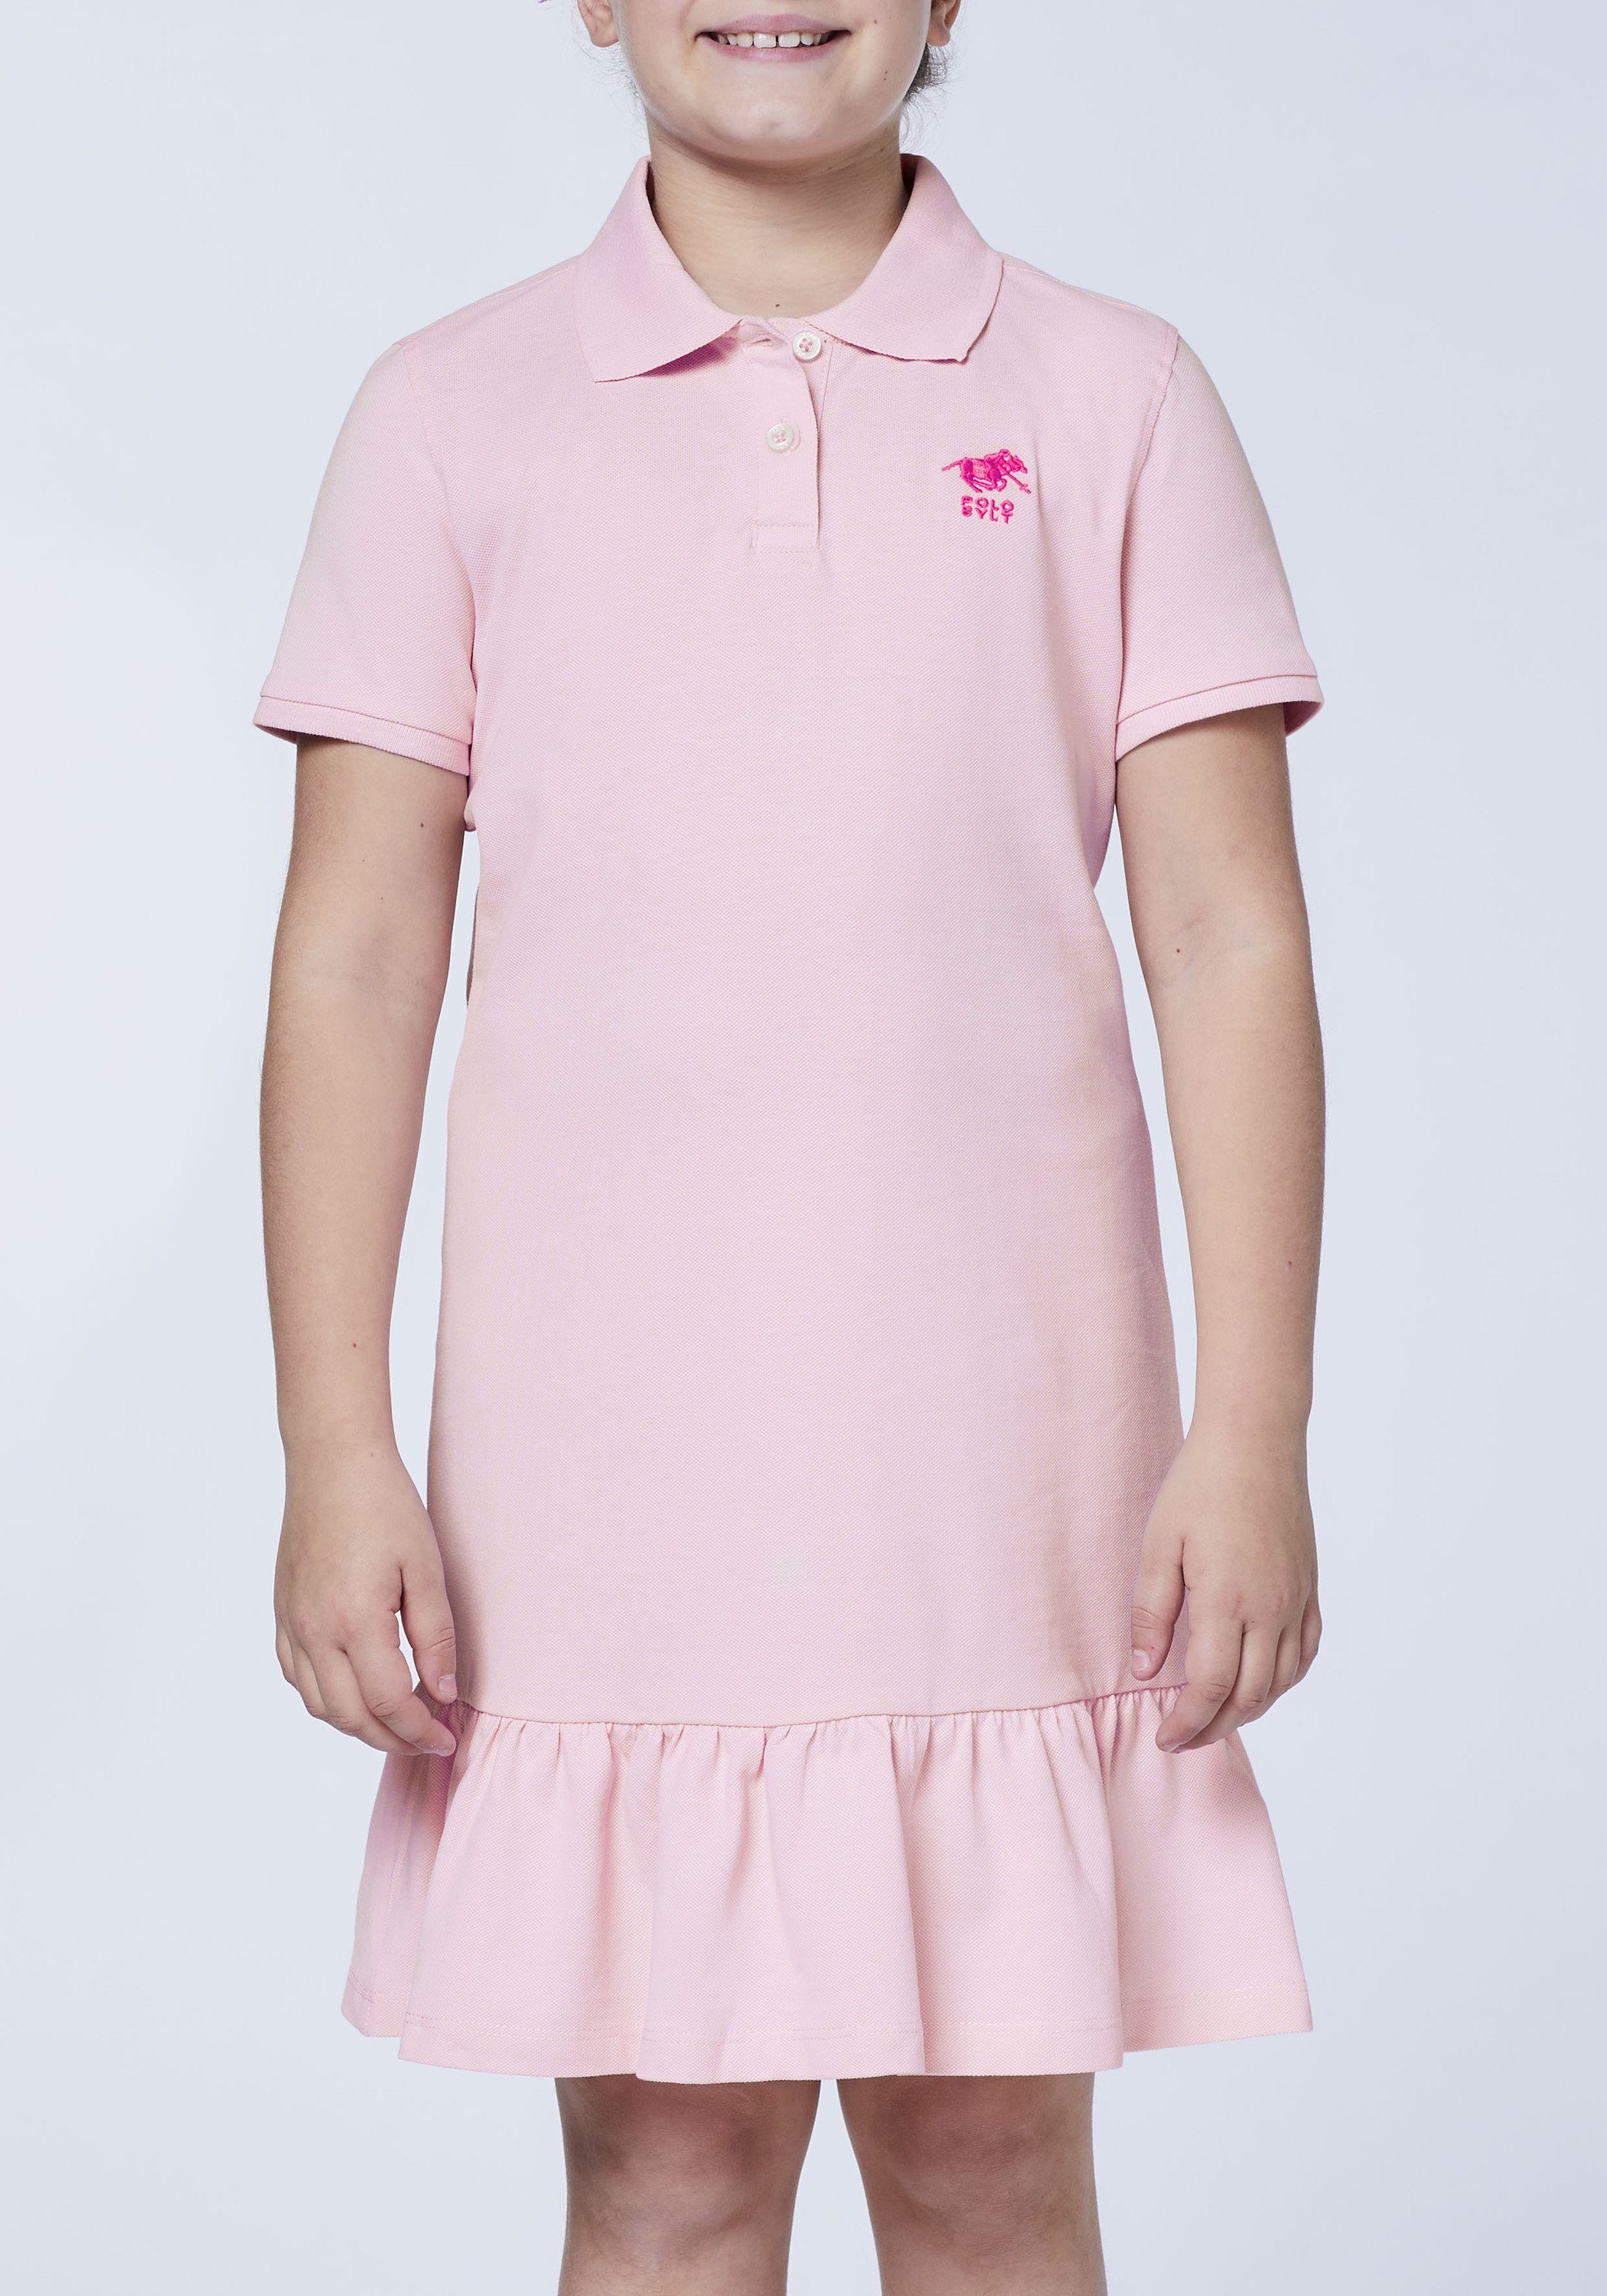 Polo mit Logo Jerseykleid Pink Polo Lady Stickerei Sylt Sylt 13-2806